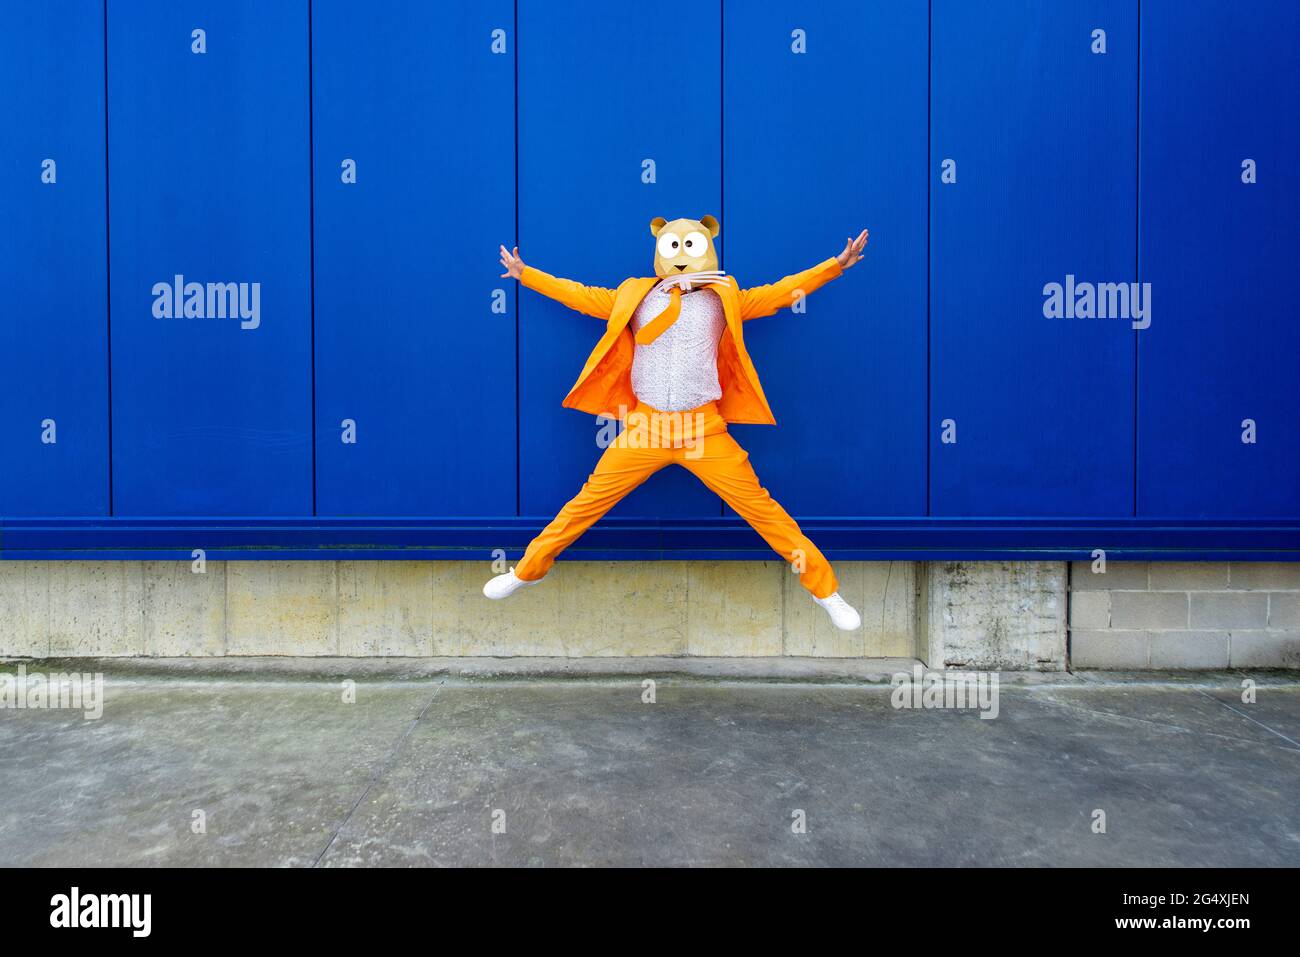 Homme portant un costume orange vif et un masque de rongeur qui saute contre le mur bleu Banque D'Images